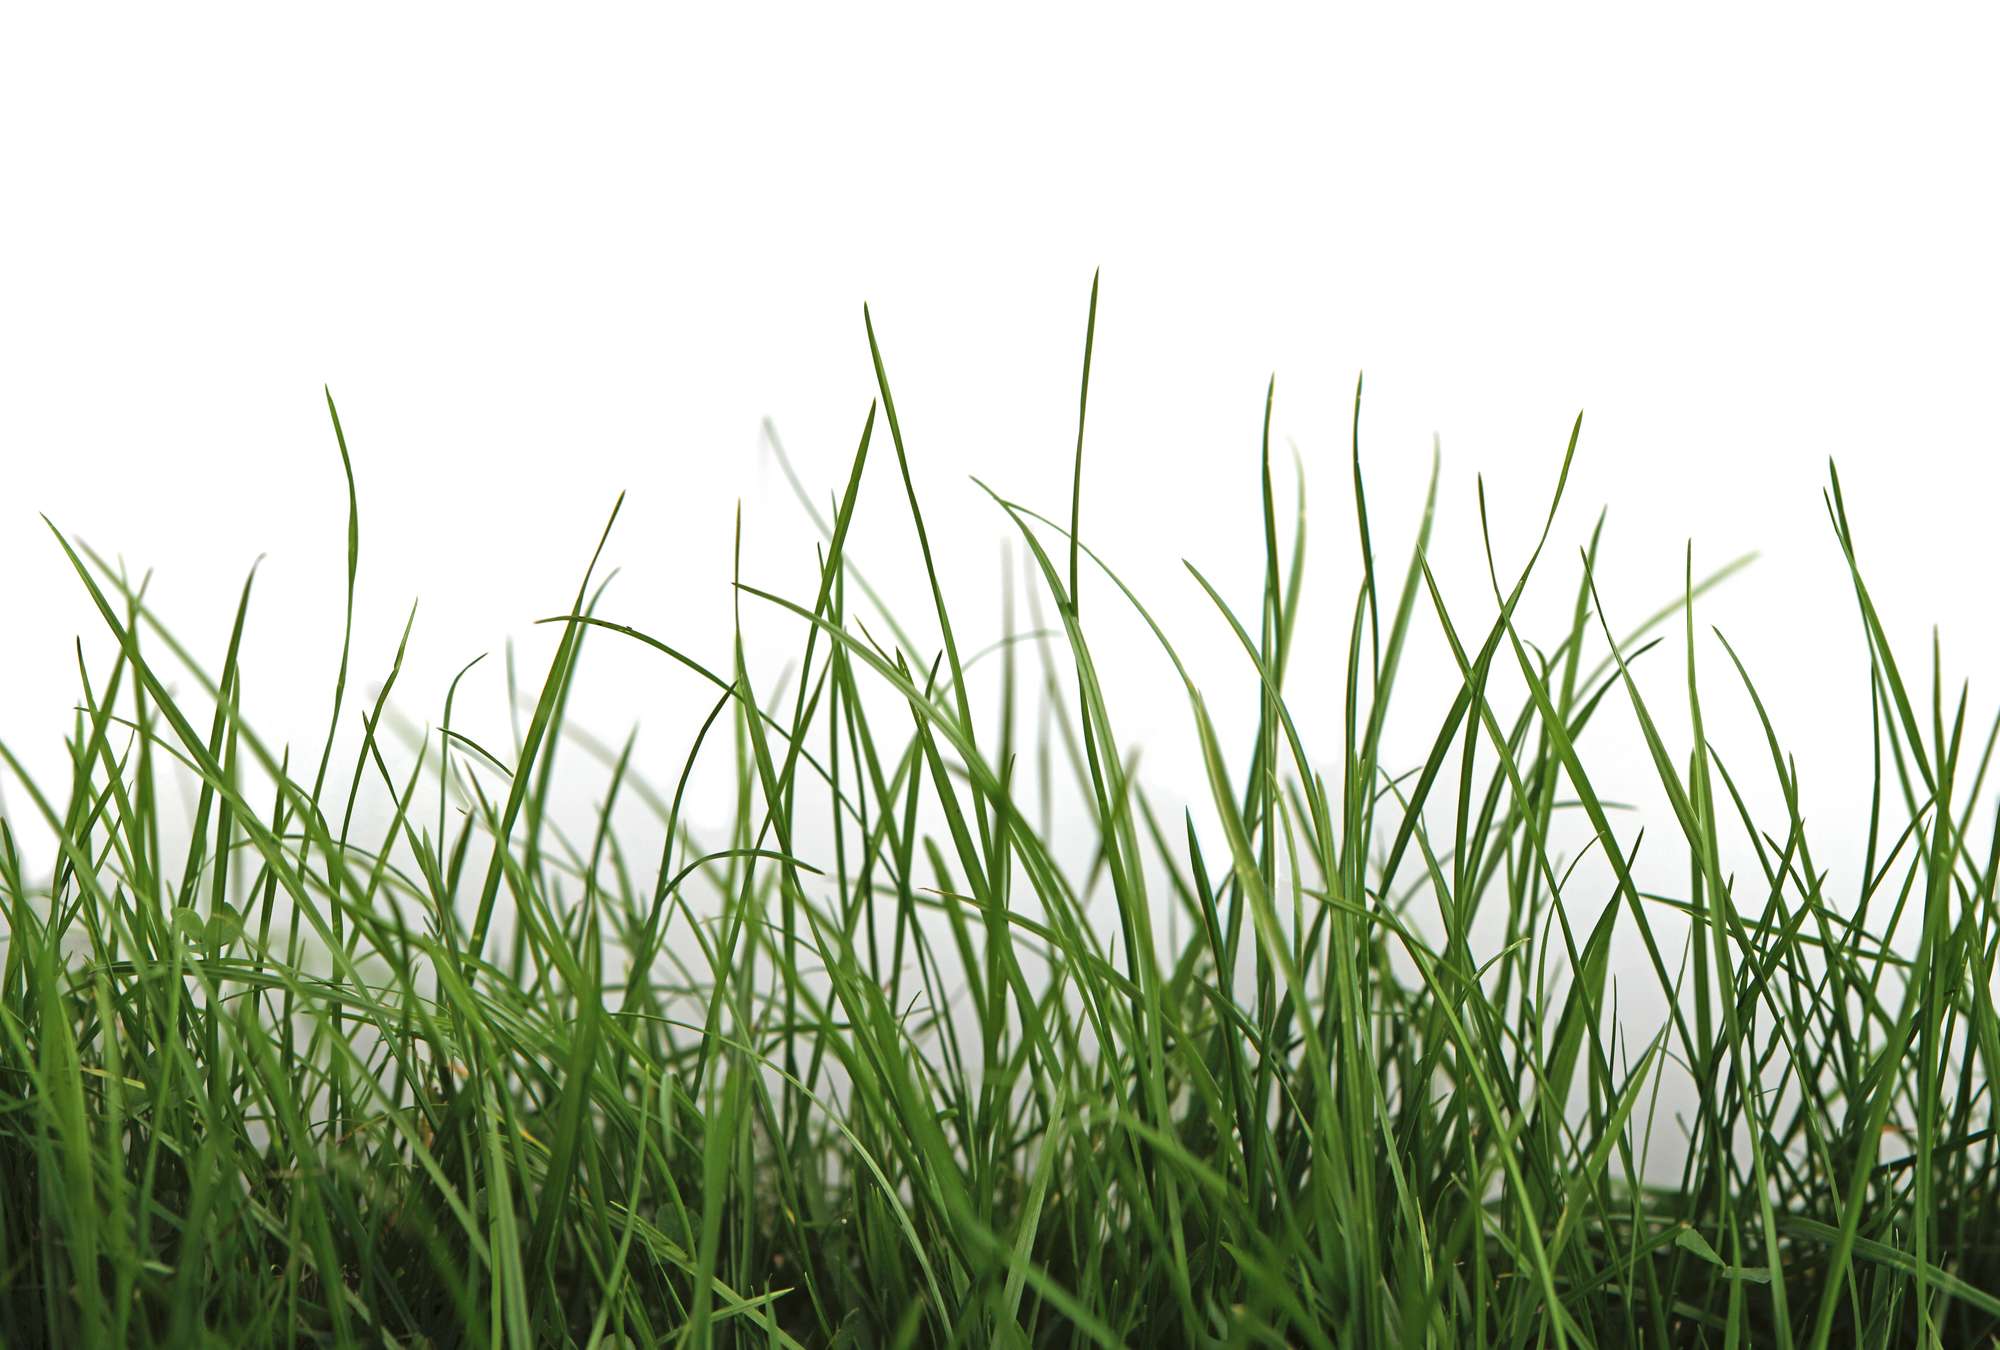             Fototapete mit Detailaufnahme von frischem Gras vor weißem Hintergrund
        